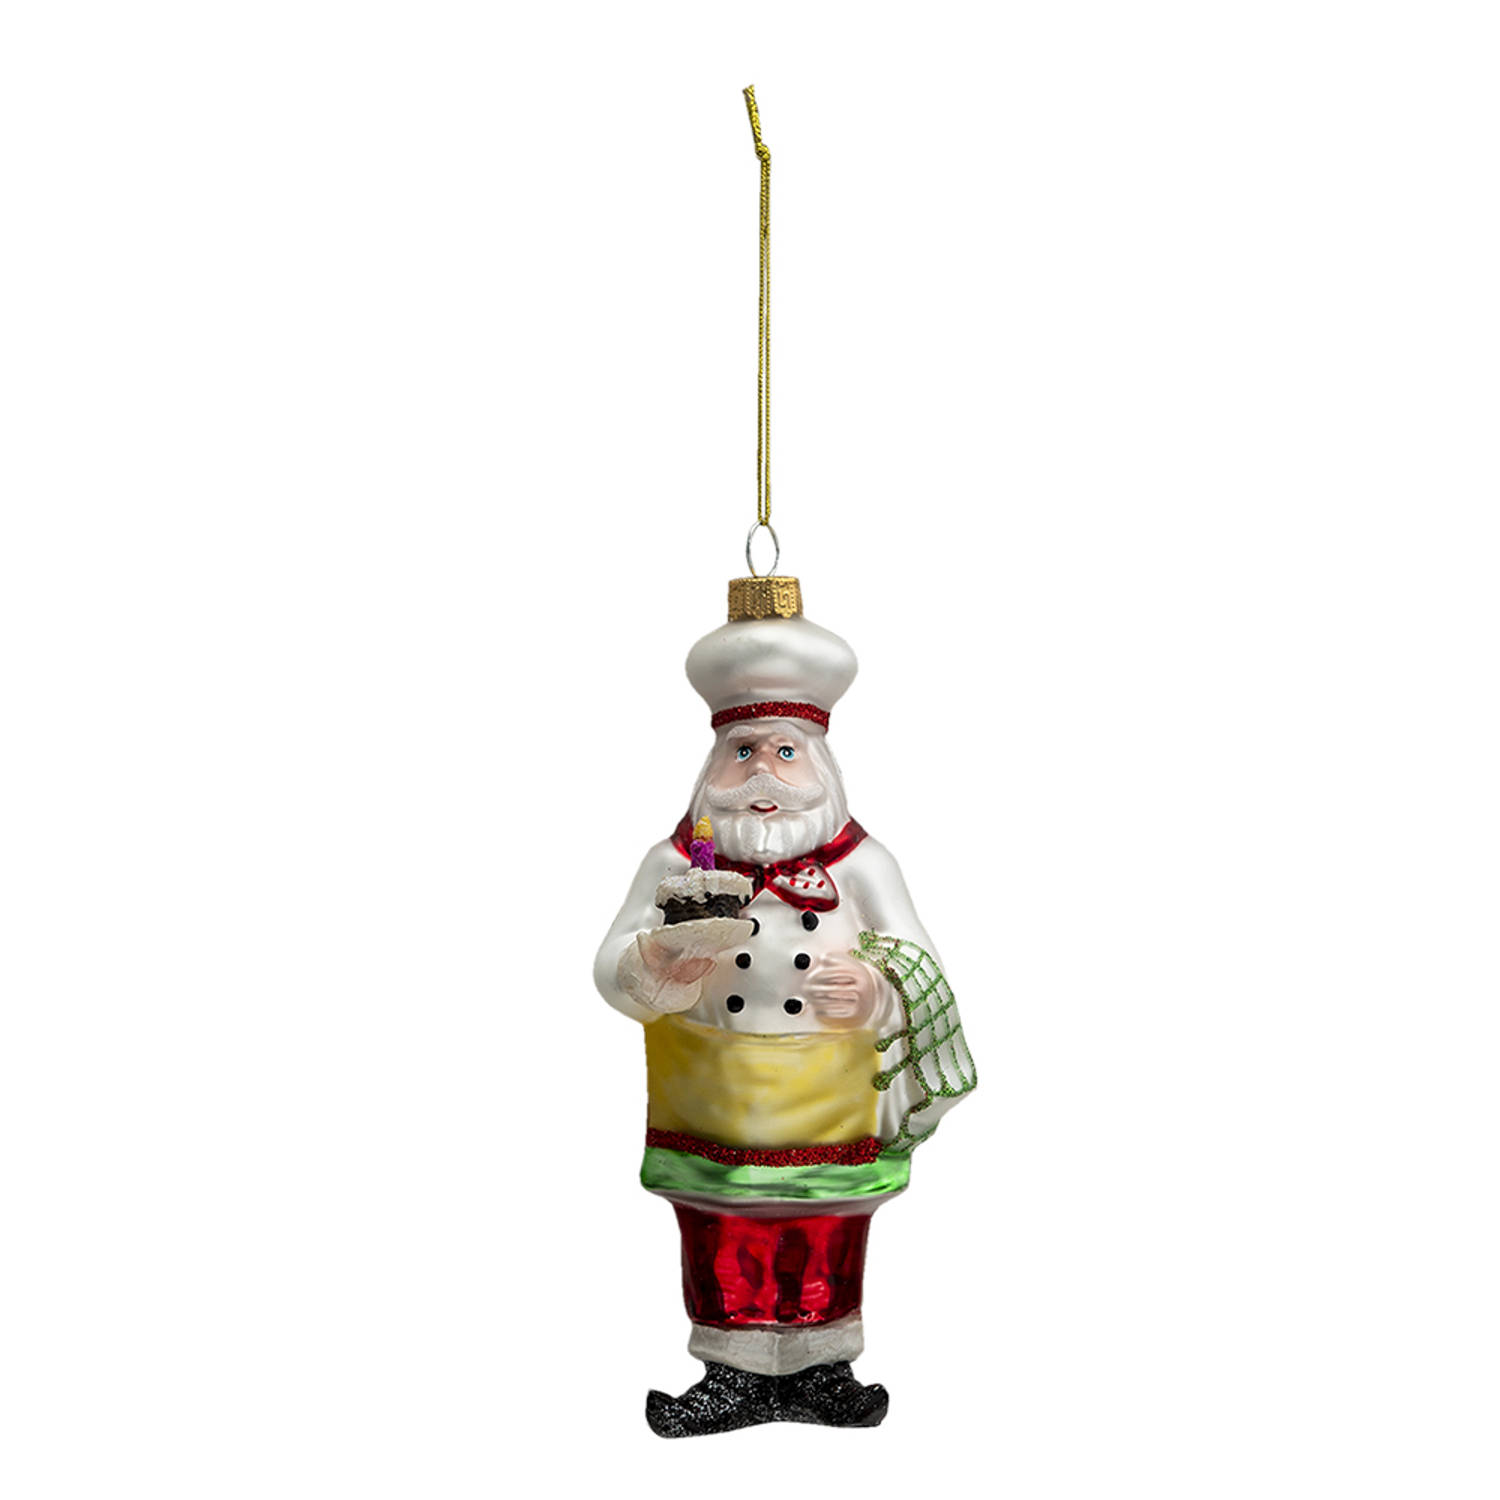 HAES DECO - Kersthanger Kerstman - Formaat 7x7x17 cm - Kleur Wit - Materiaal Glas / Polyresin - Kerstversiering, Kerstdecoratie, Decoratie Hanger, Kerstboomversiering